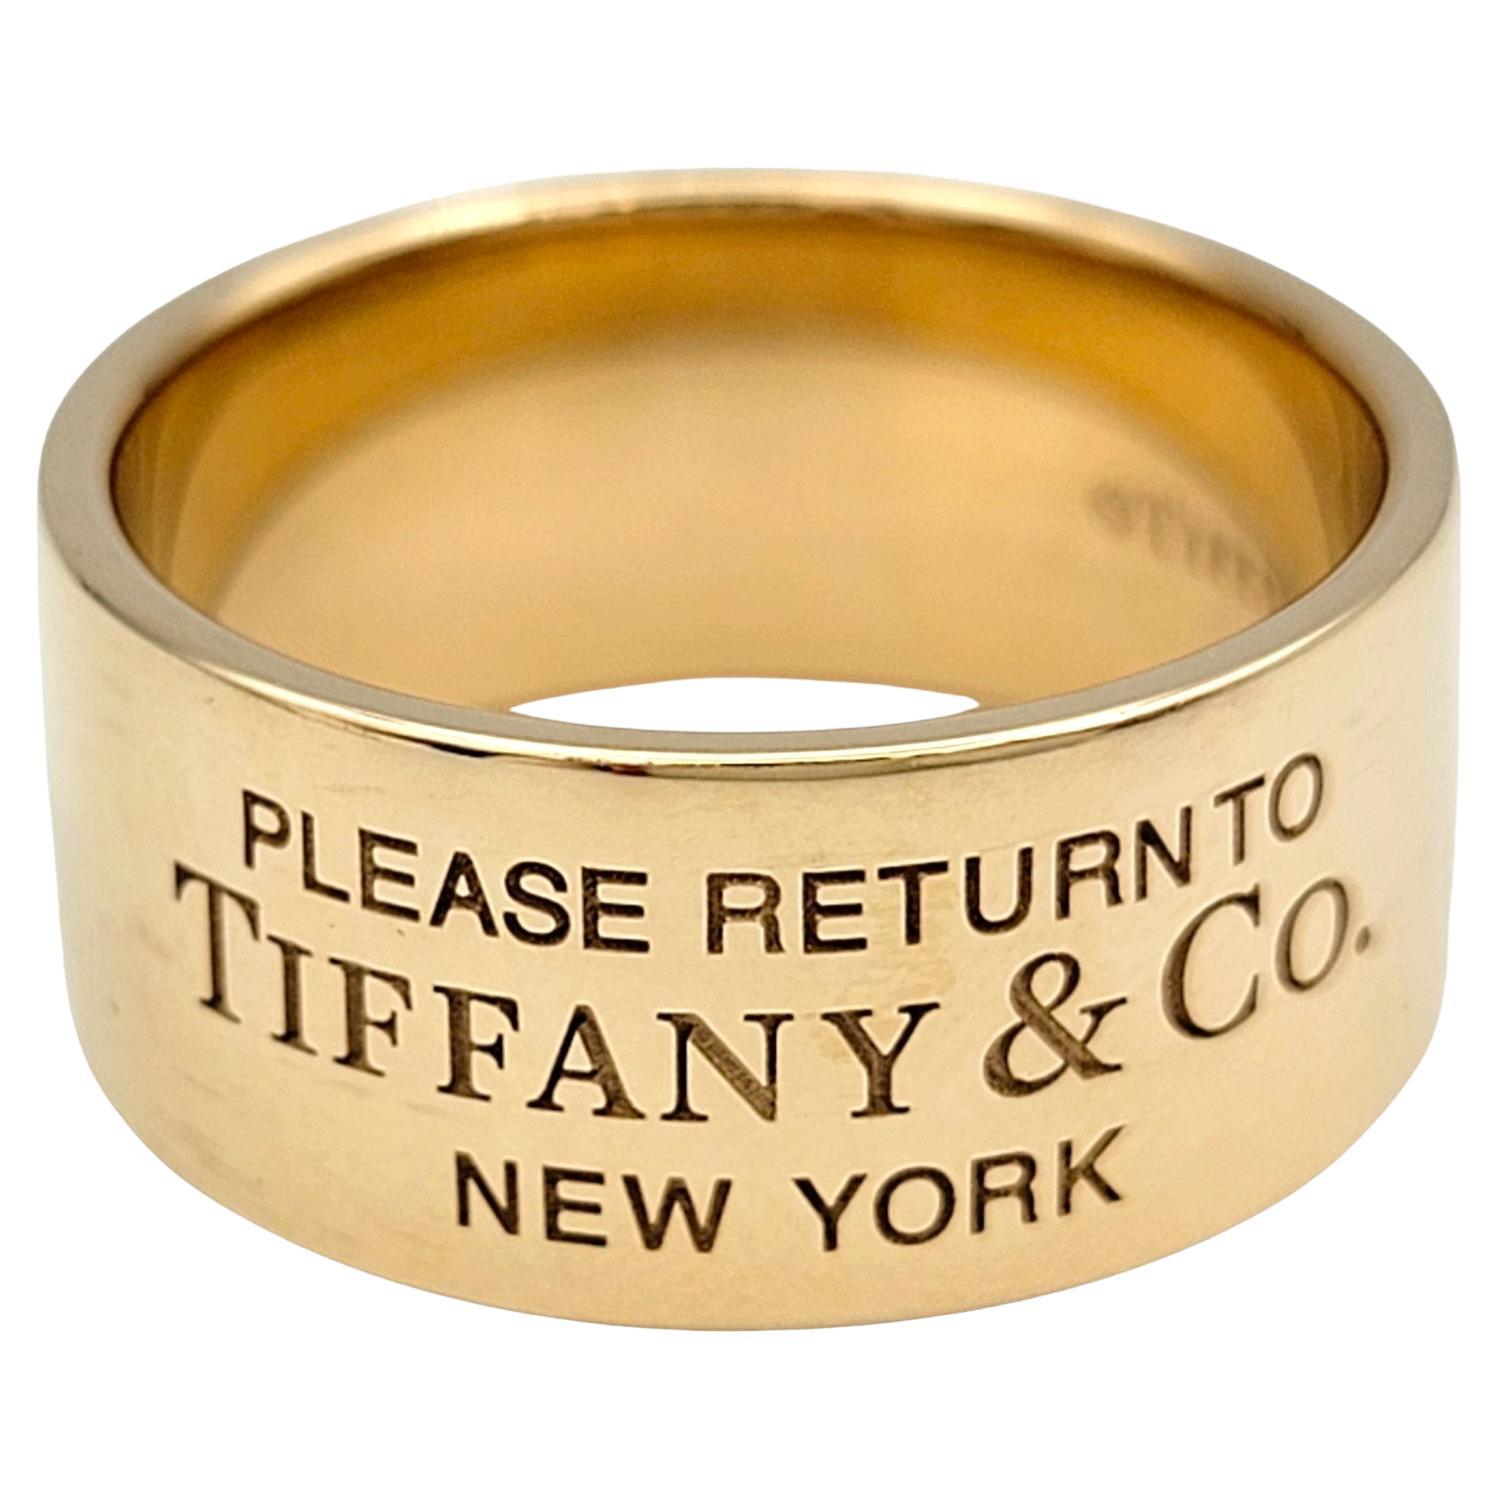 Ringgröße: 10

Dieser wunderschöne Bandring von Tiffany & Co. aus 18 Karat Roségold, der zur berühmten 